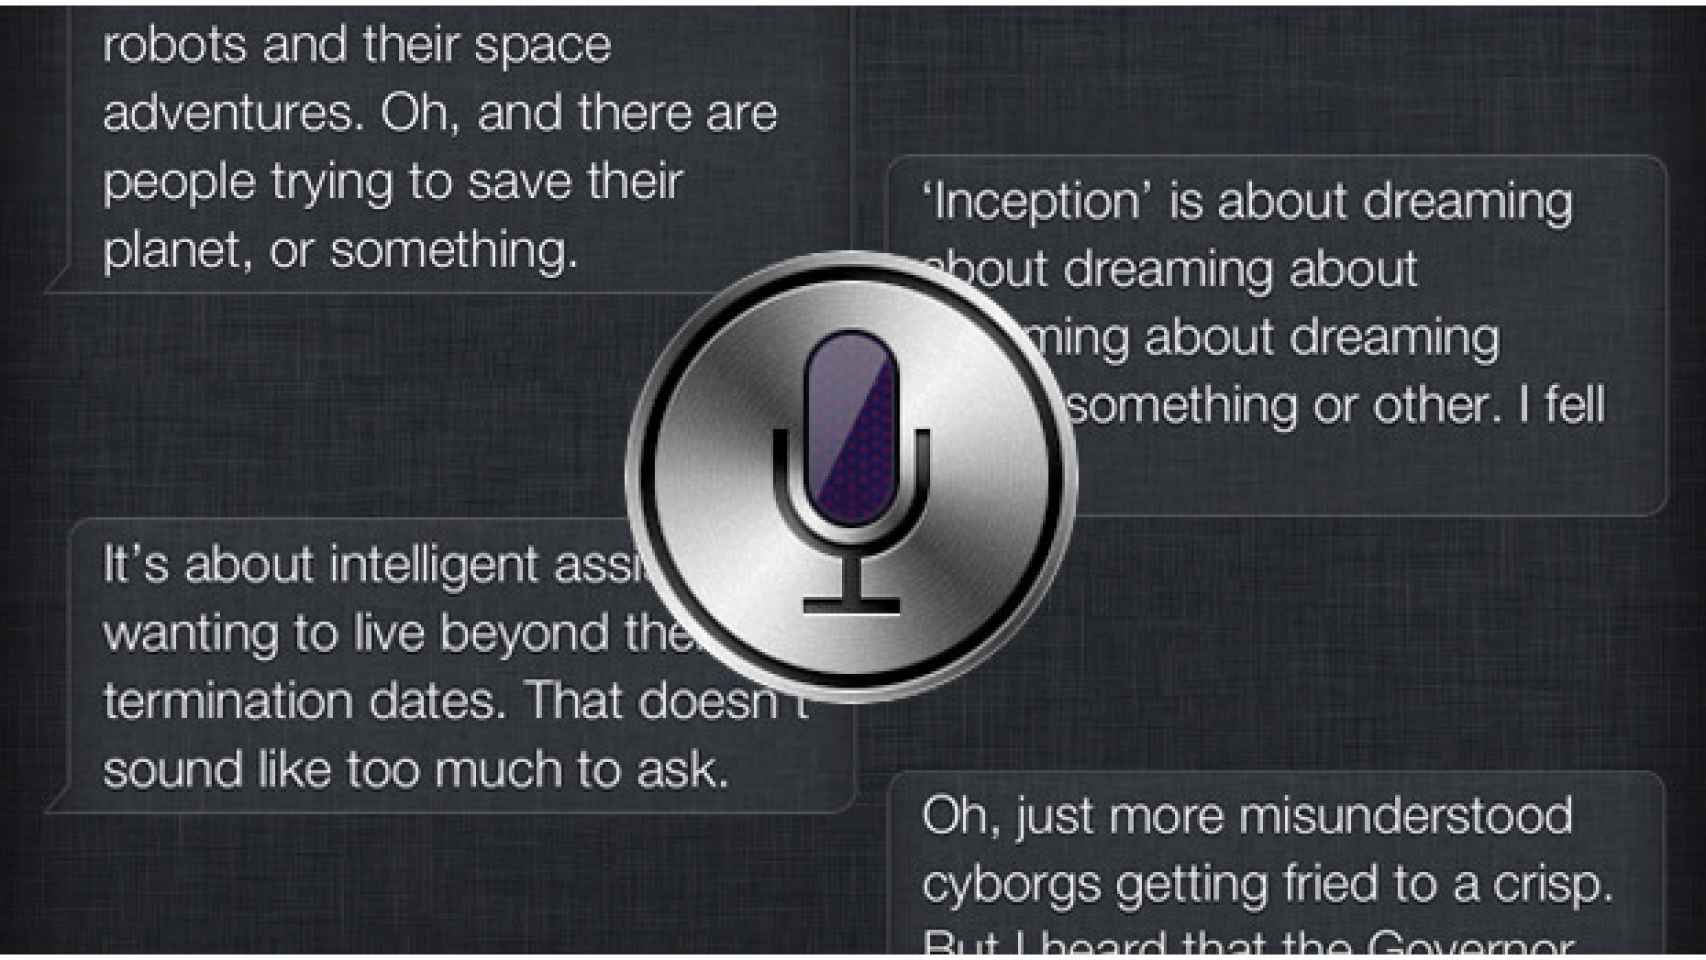 Historias curiosas: Siri pudo ser para android gracias a Verizon